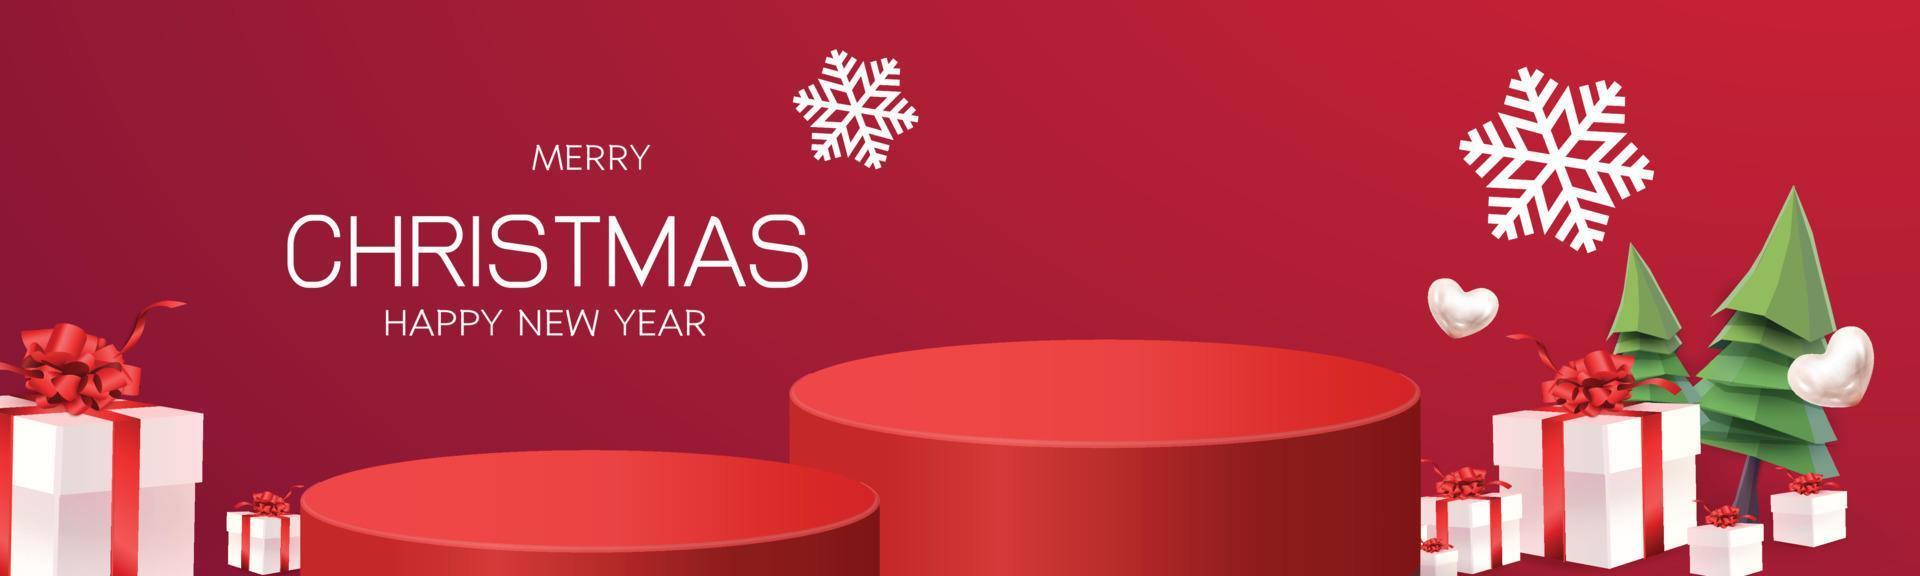 albero rosso del fondo del nuovo anno di natale del palco del podio per l'illustrazione di vettore di pubblicità dello shopping del modello